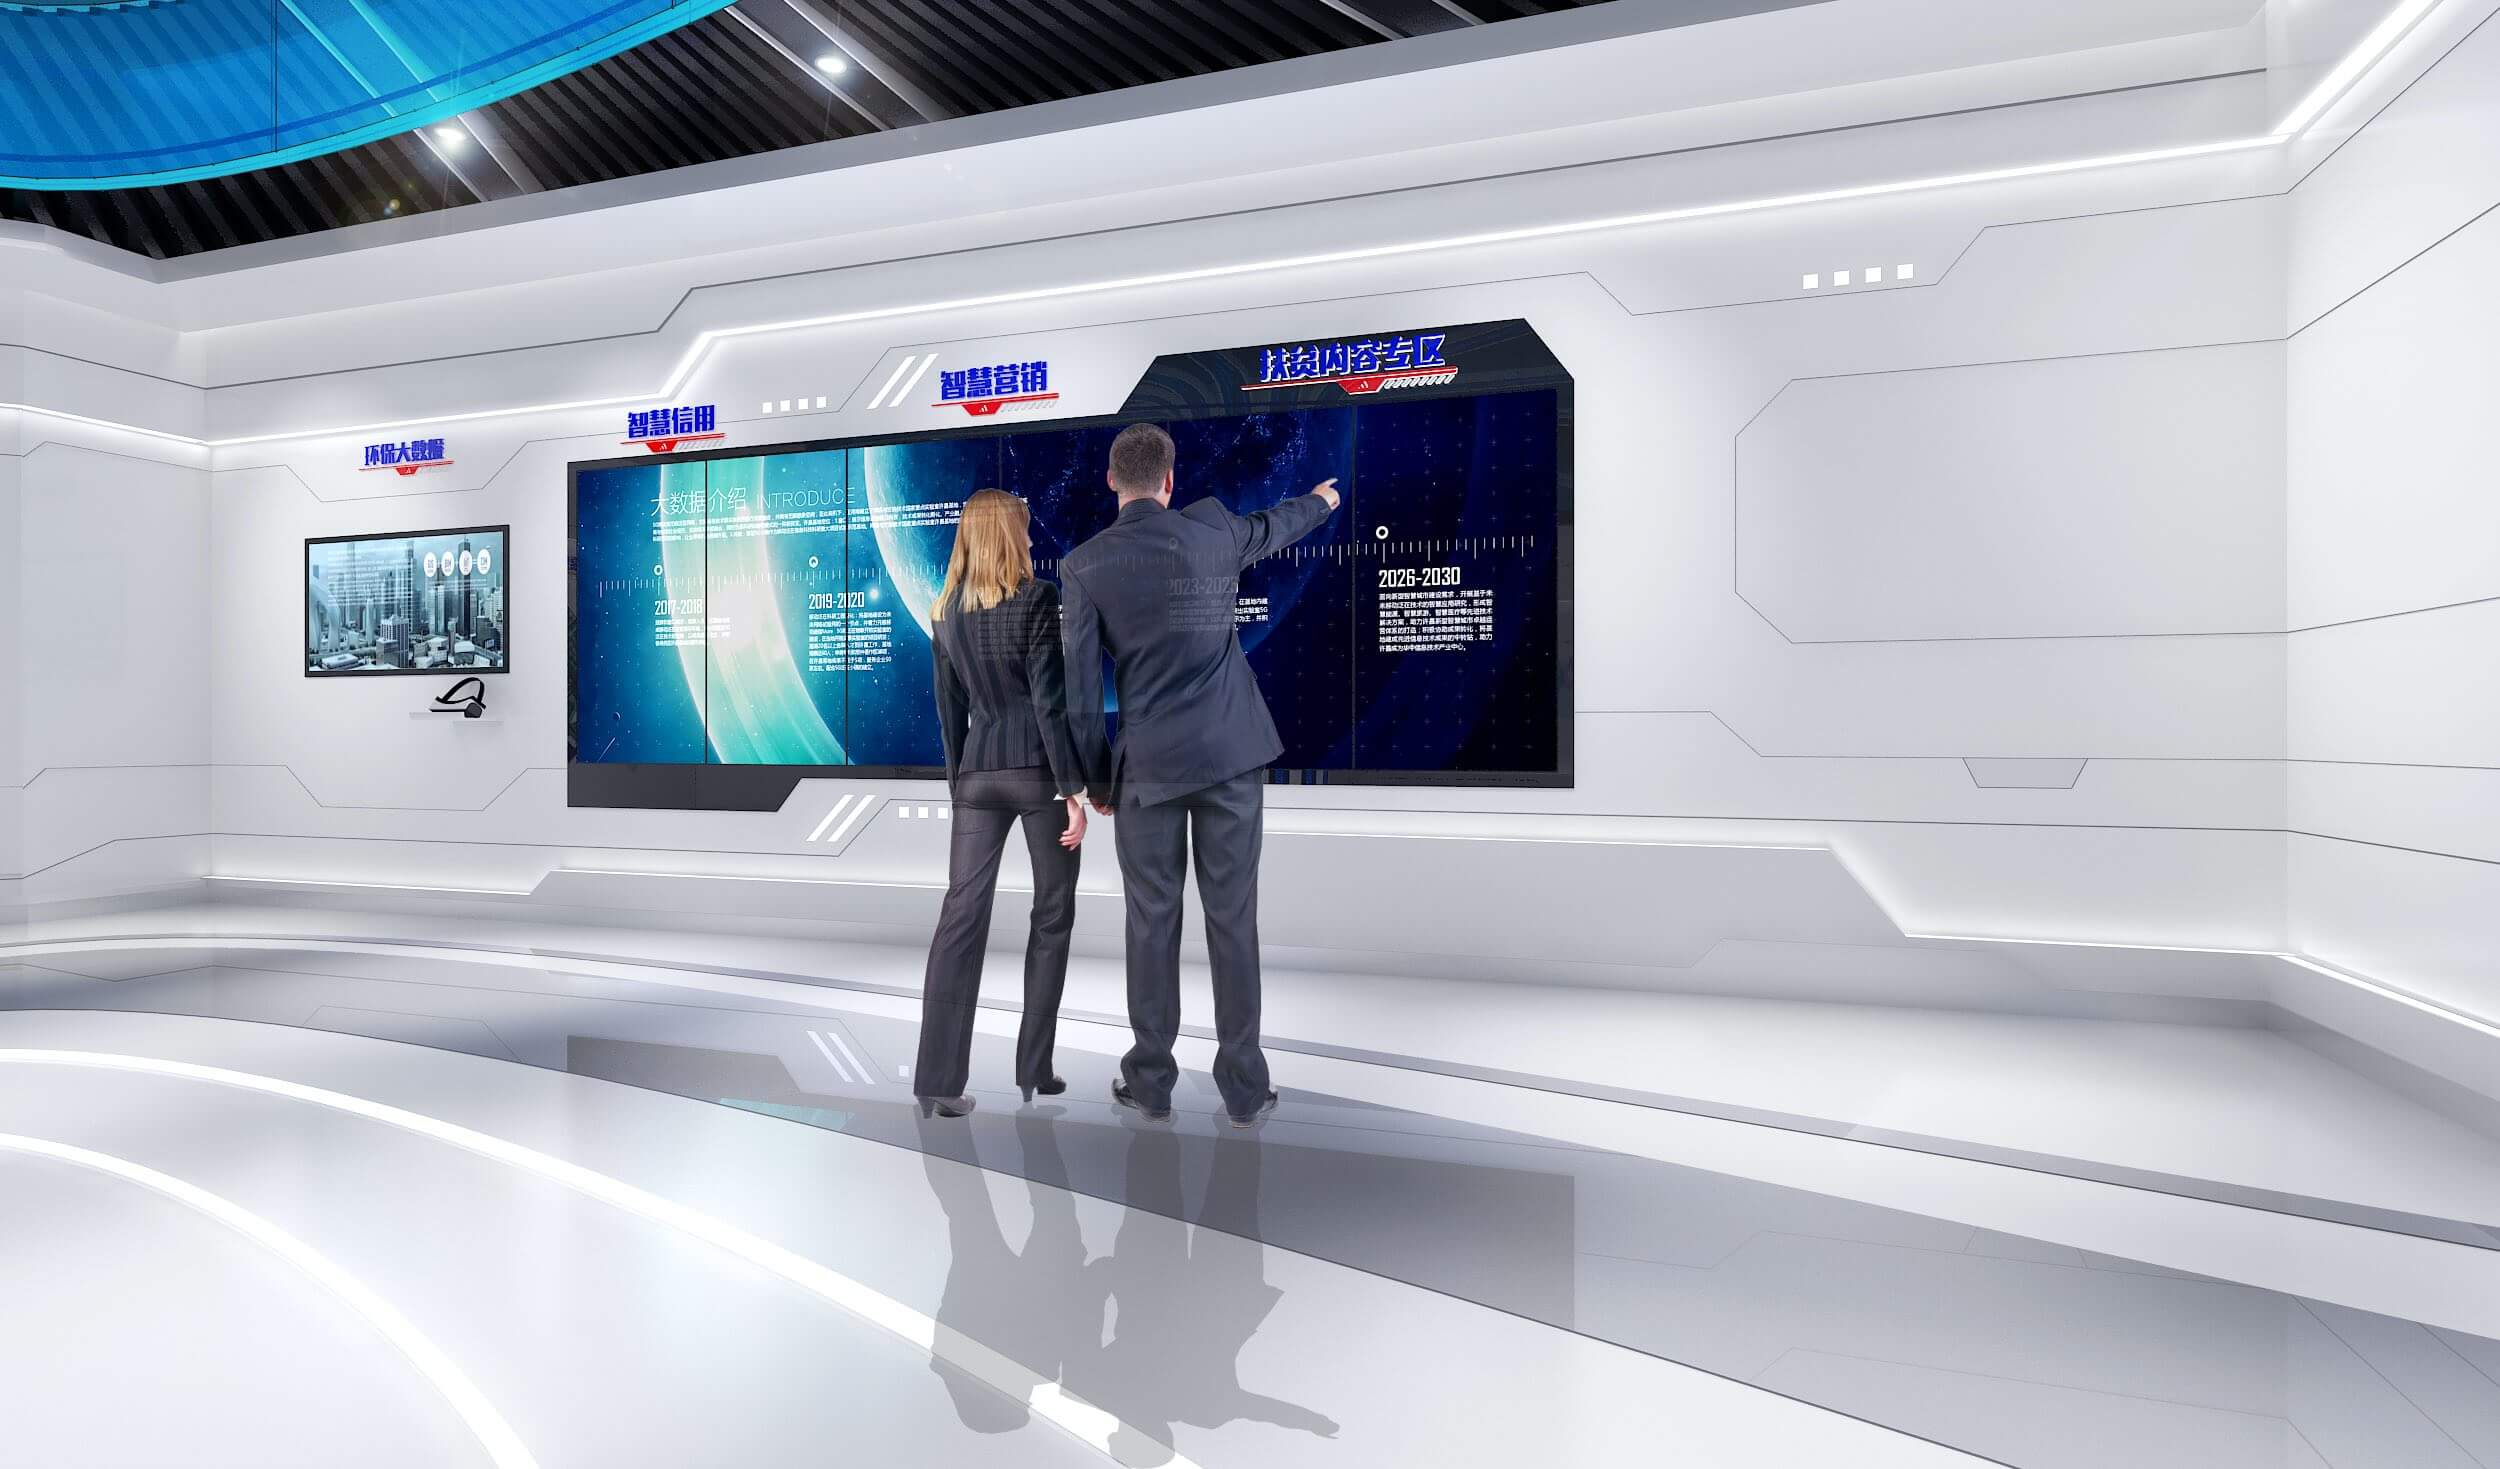 图片展示两位穿着正装的人站在高科技房间内，前方是一个巨大的显示屏幕，他们似乎在讨论屏幕上的数据。